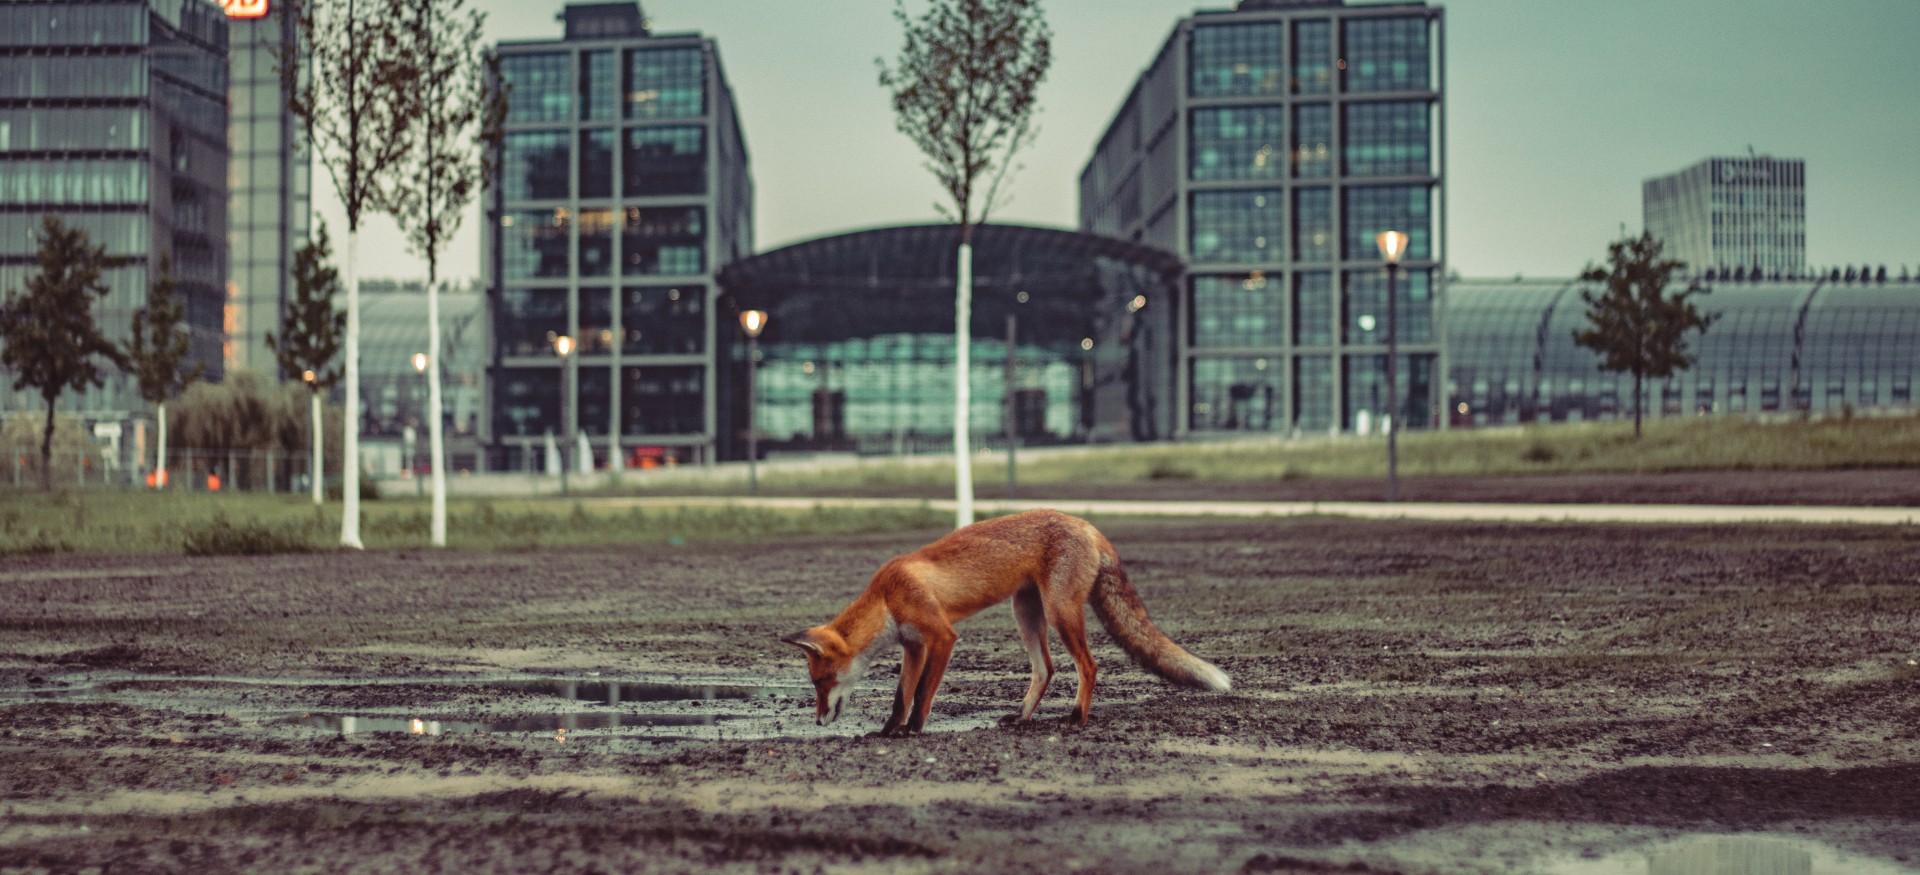 Des renards et d'autres espèces plutôt discrètes ont été observés en ville durant le confinement. © Hark, Adobe Stock